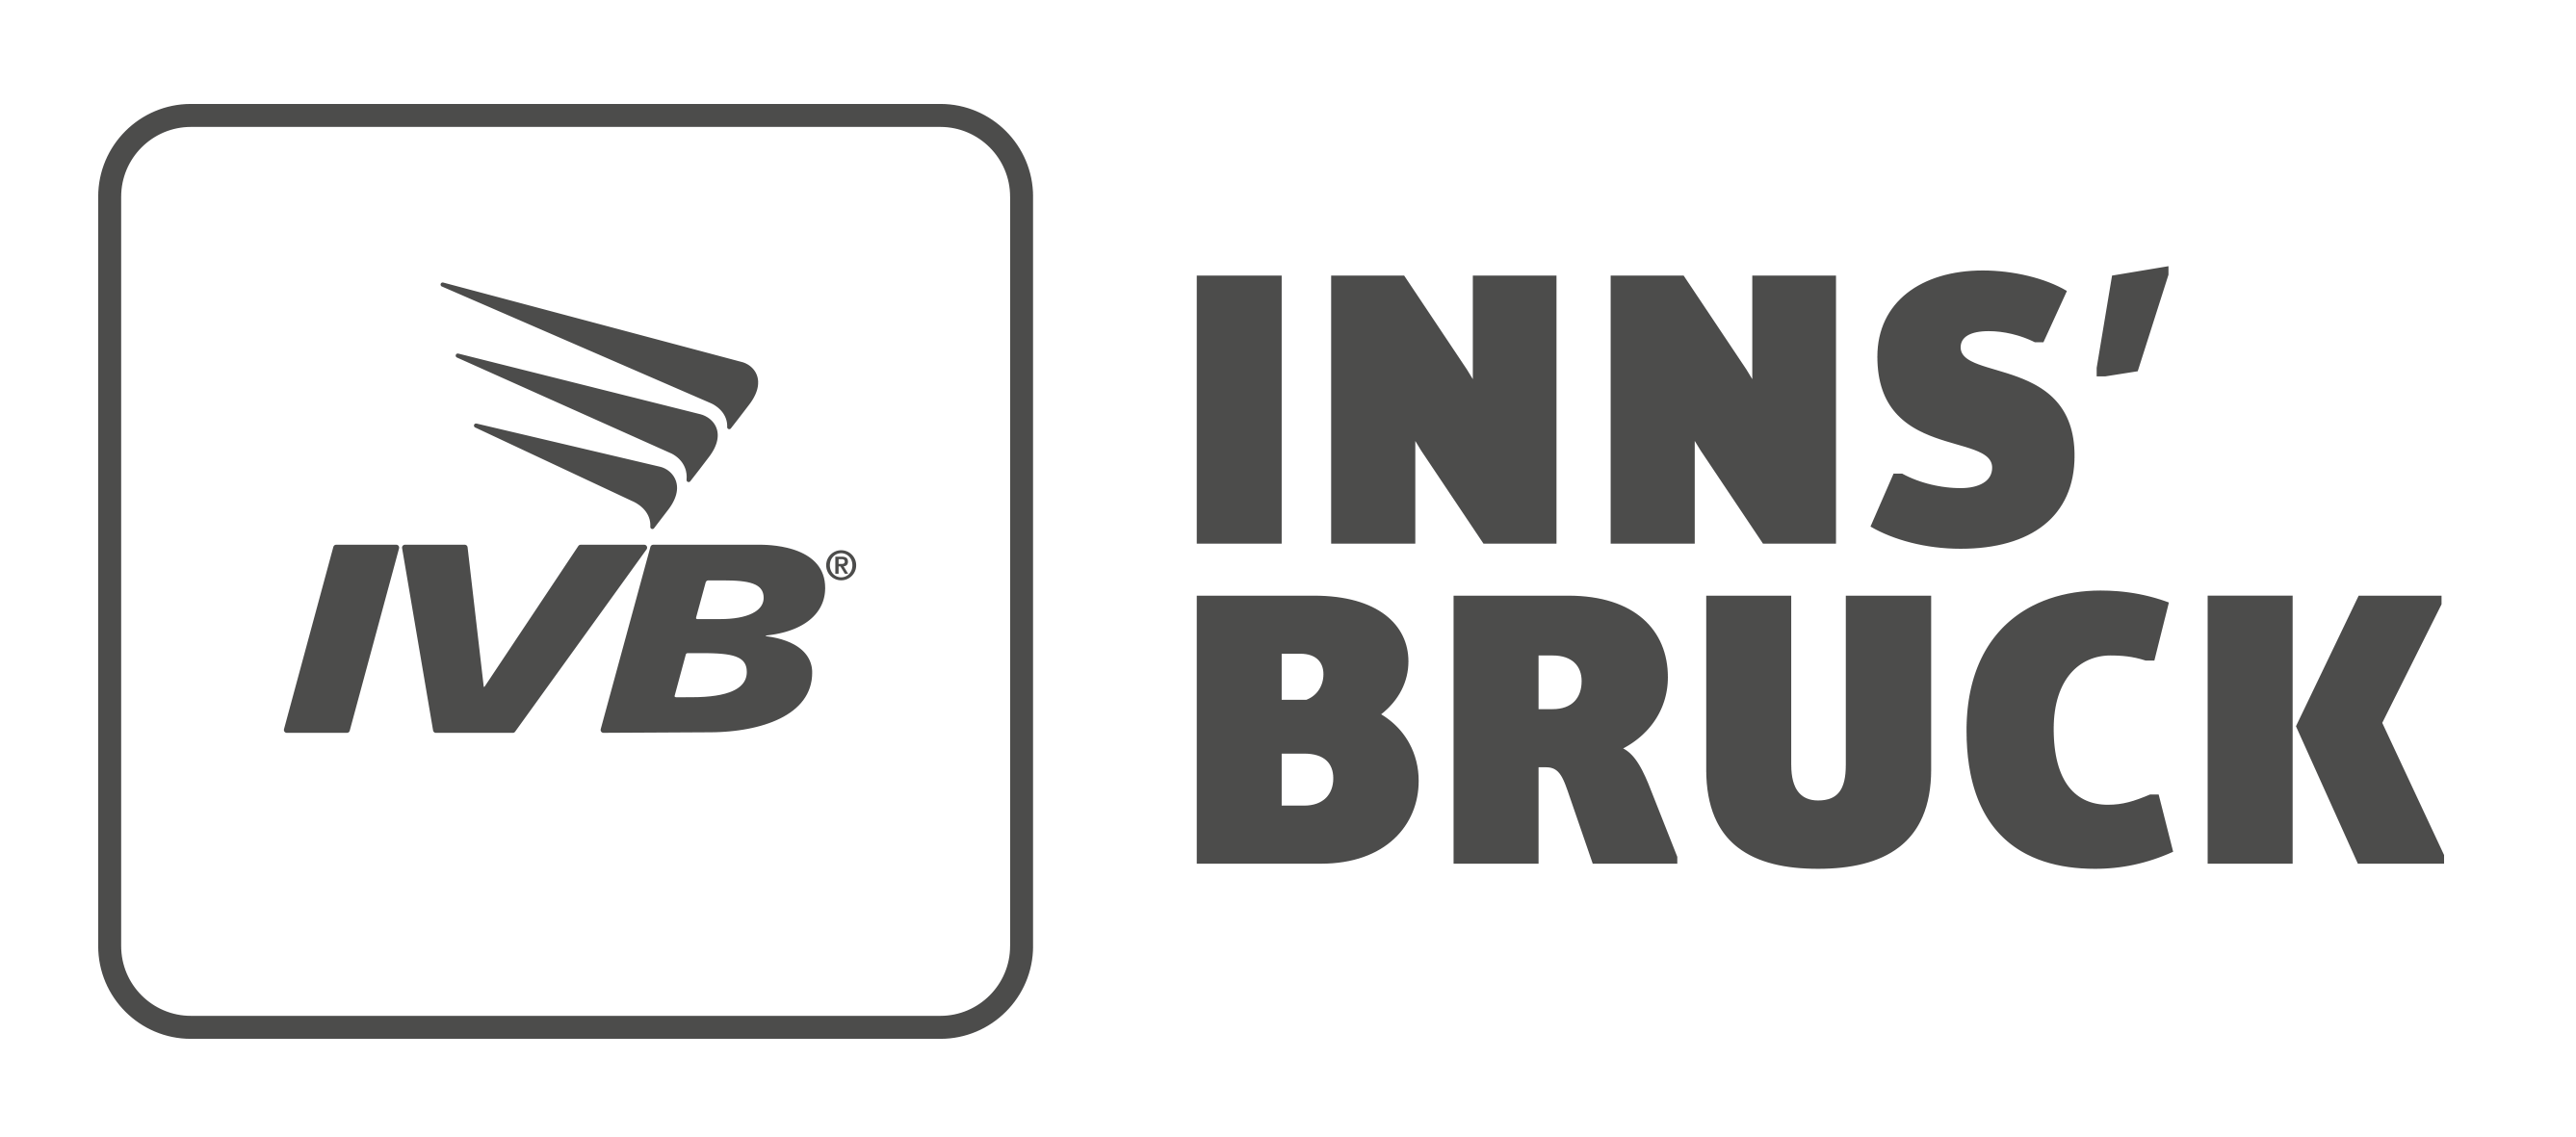 IVB Logo